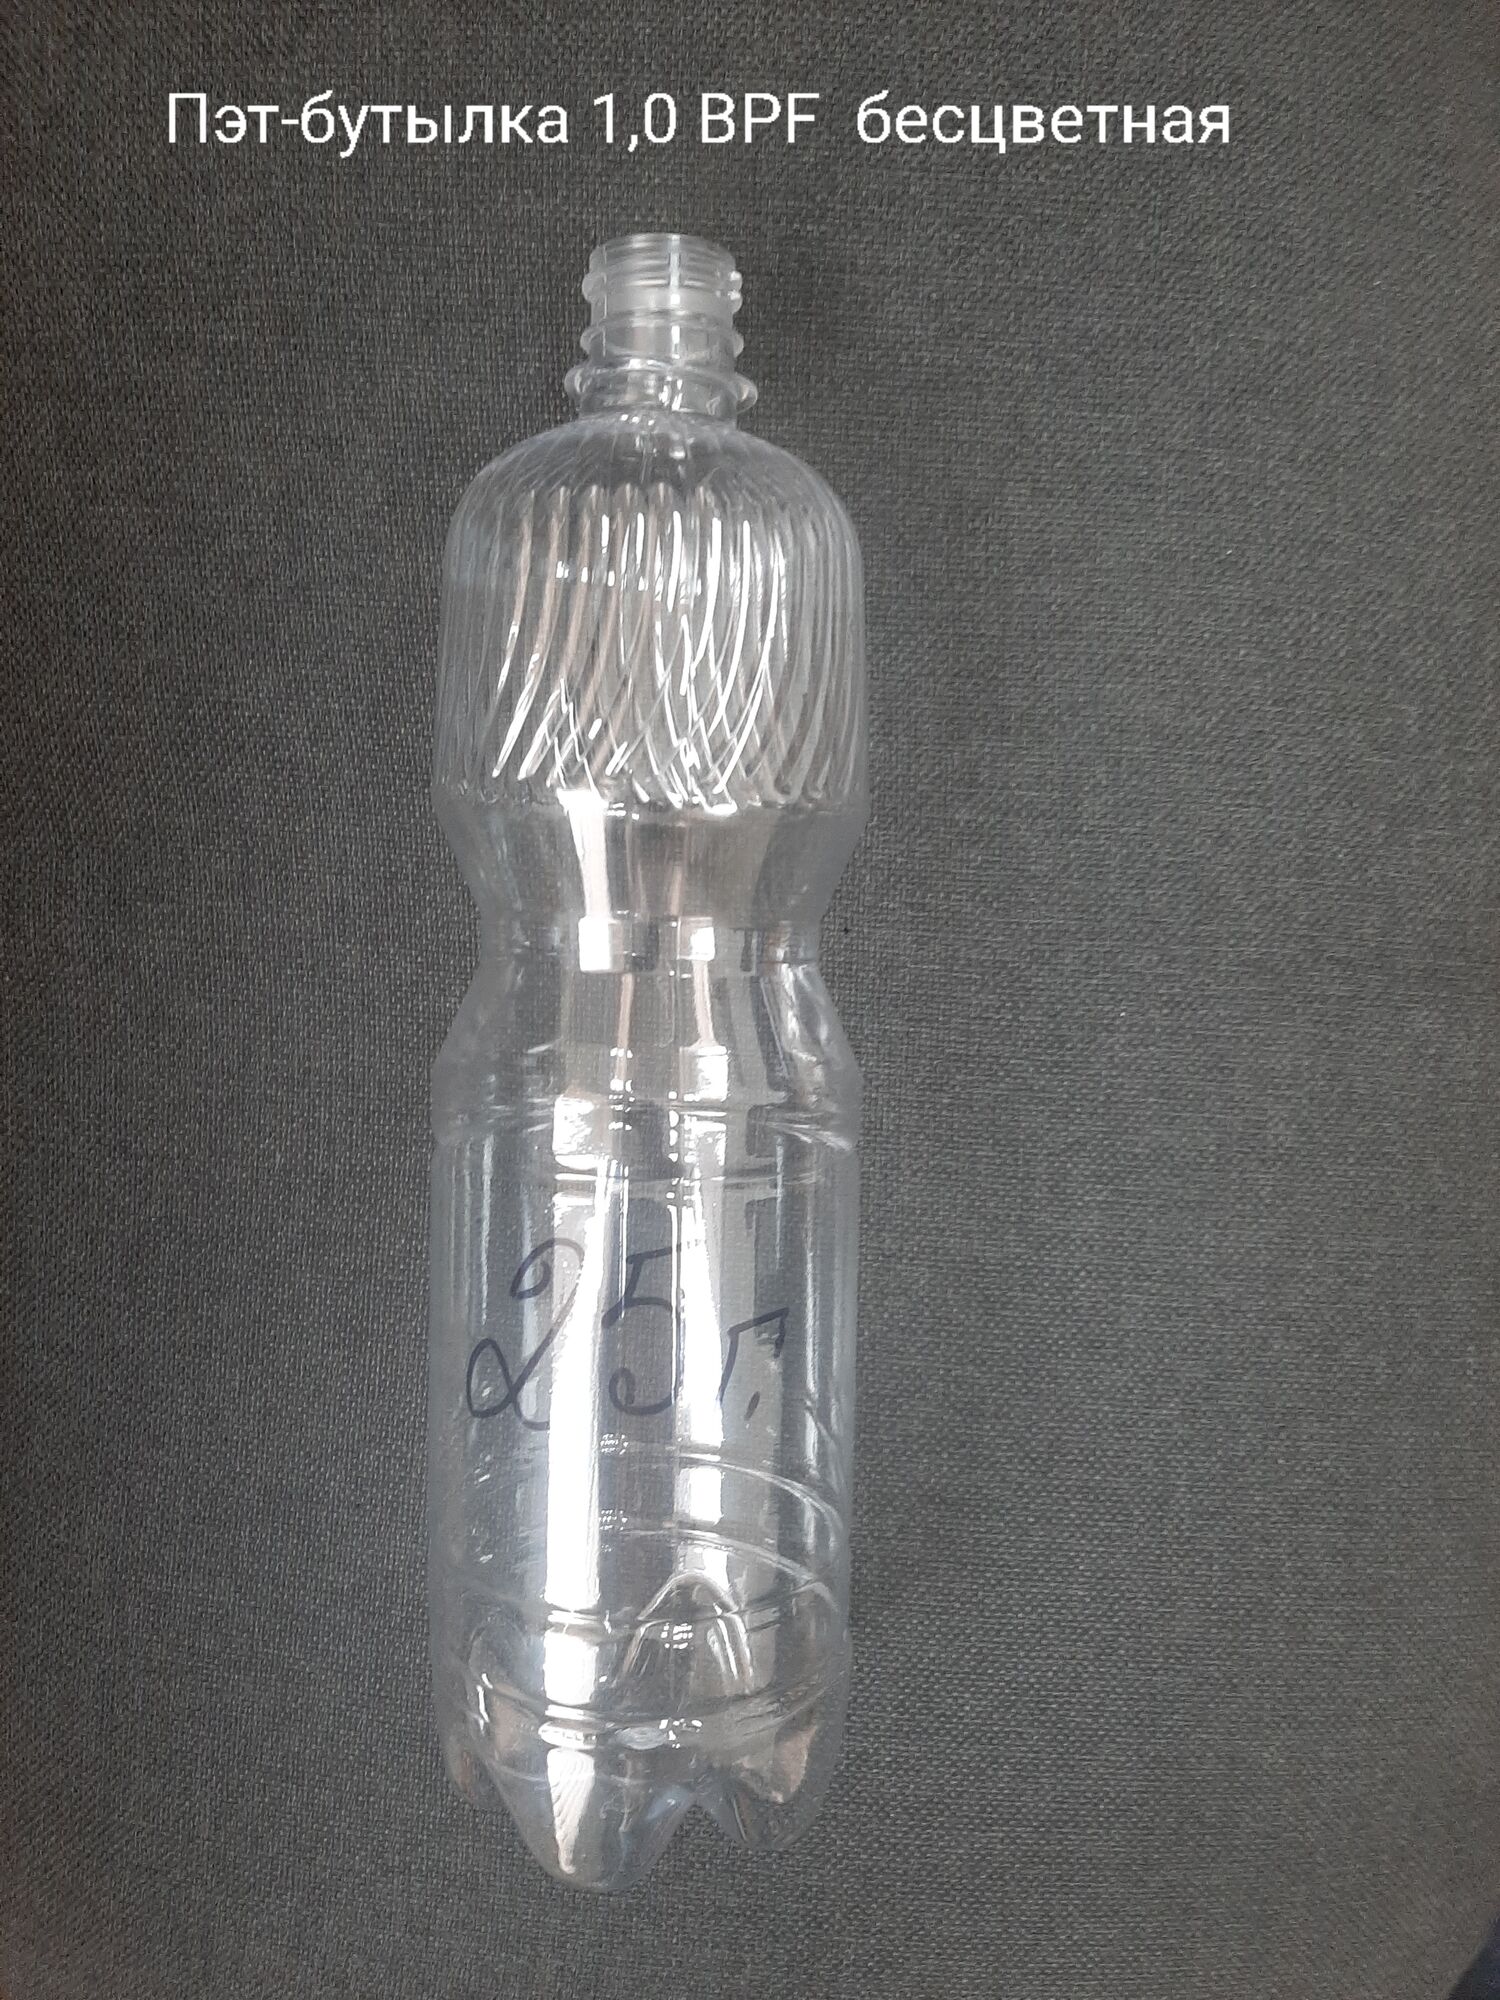 Пэт-бутылка 1,0 BPF, бесцветная (120 шт в упаковке) вес 25 гр.